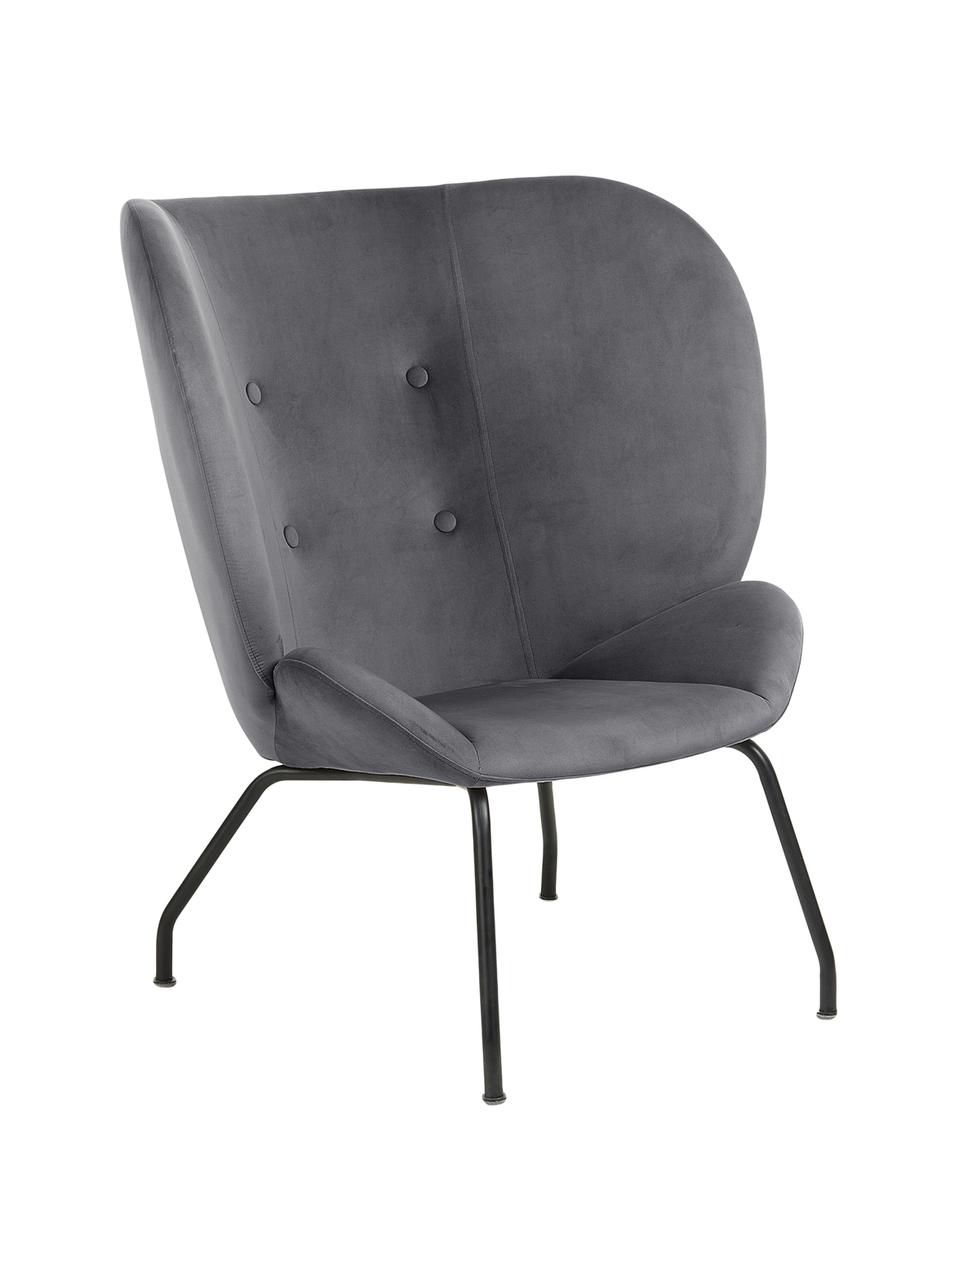 Fluwelen lounge fauteuil Vernen, Fluweel, metaal, Donkergrijs, zwart, B 90 x D 82 cm